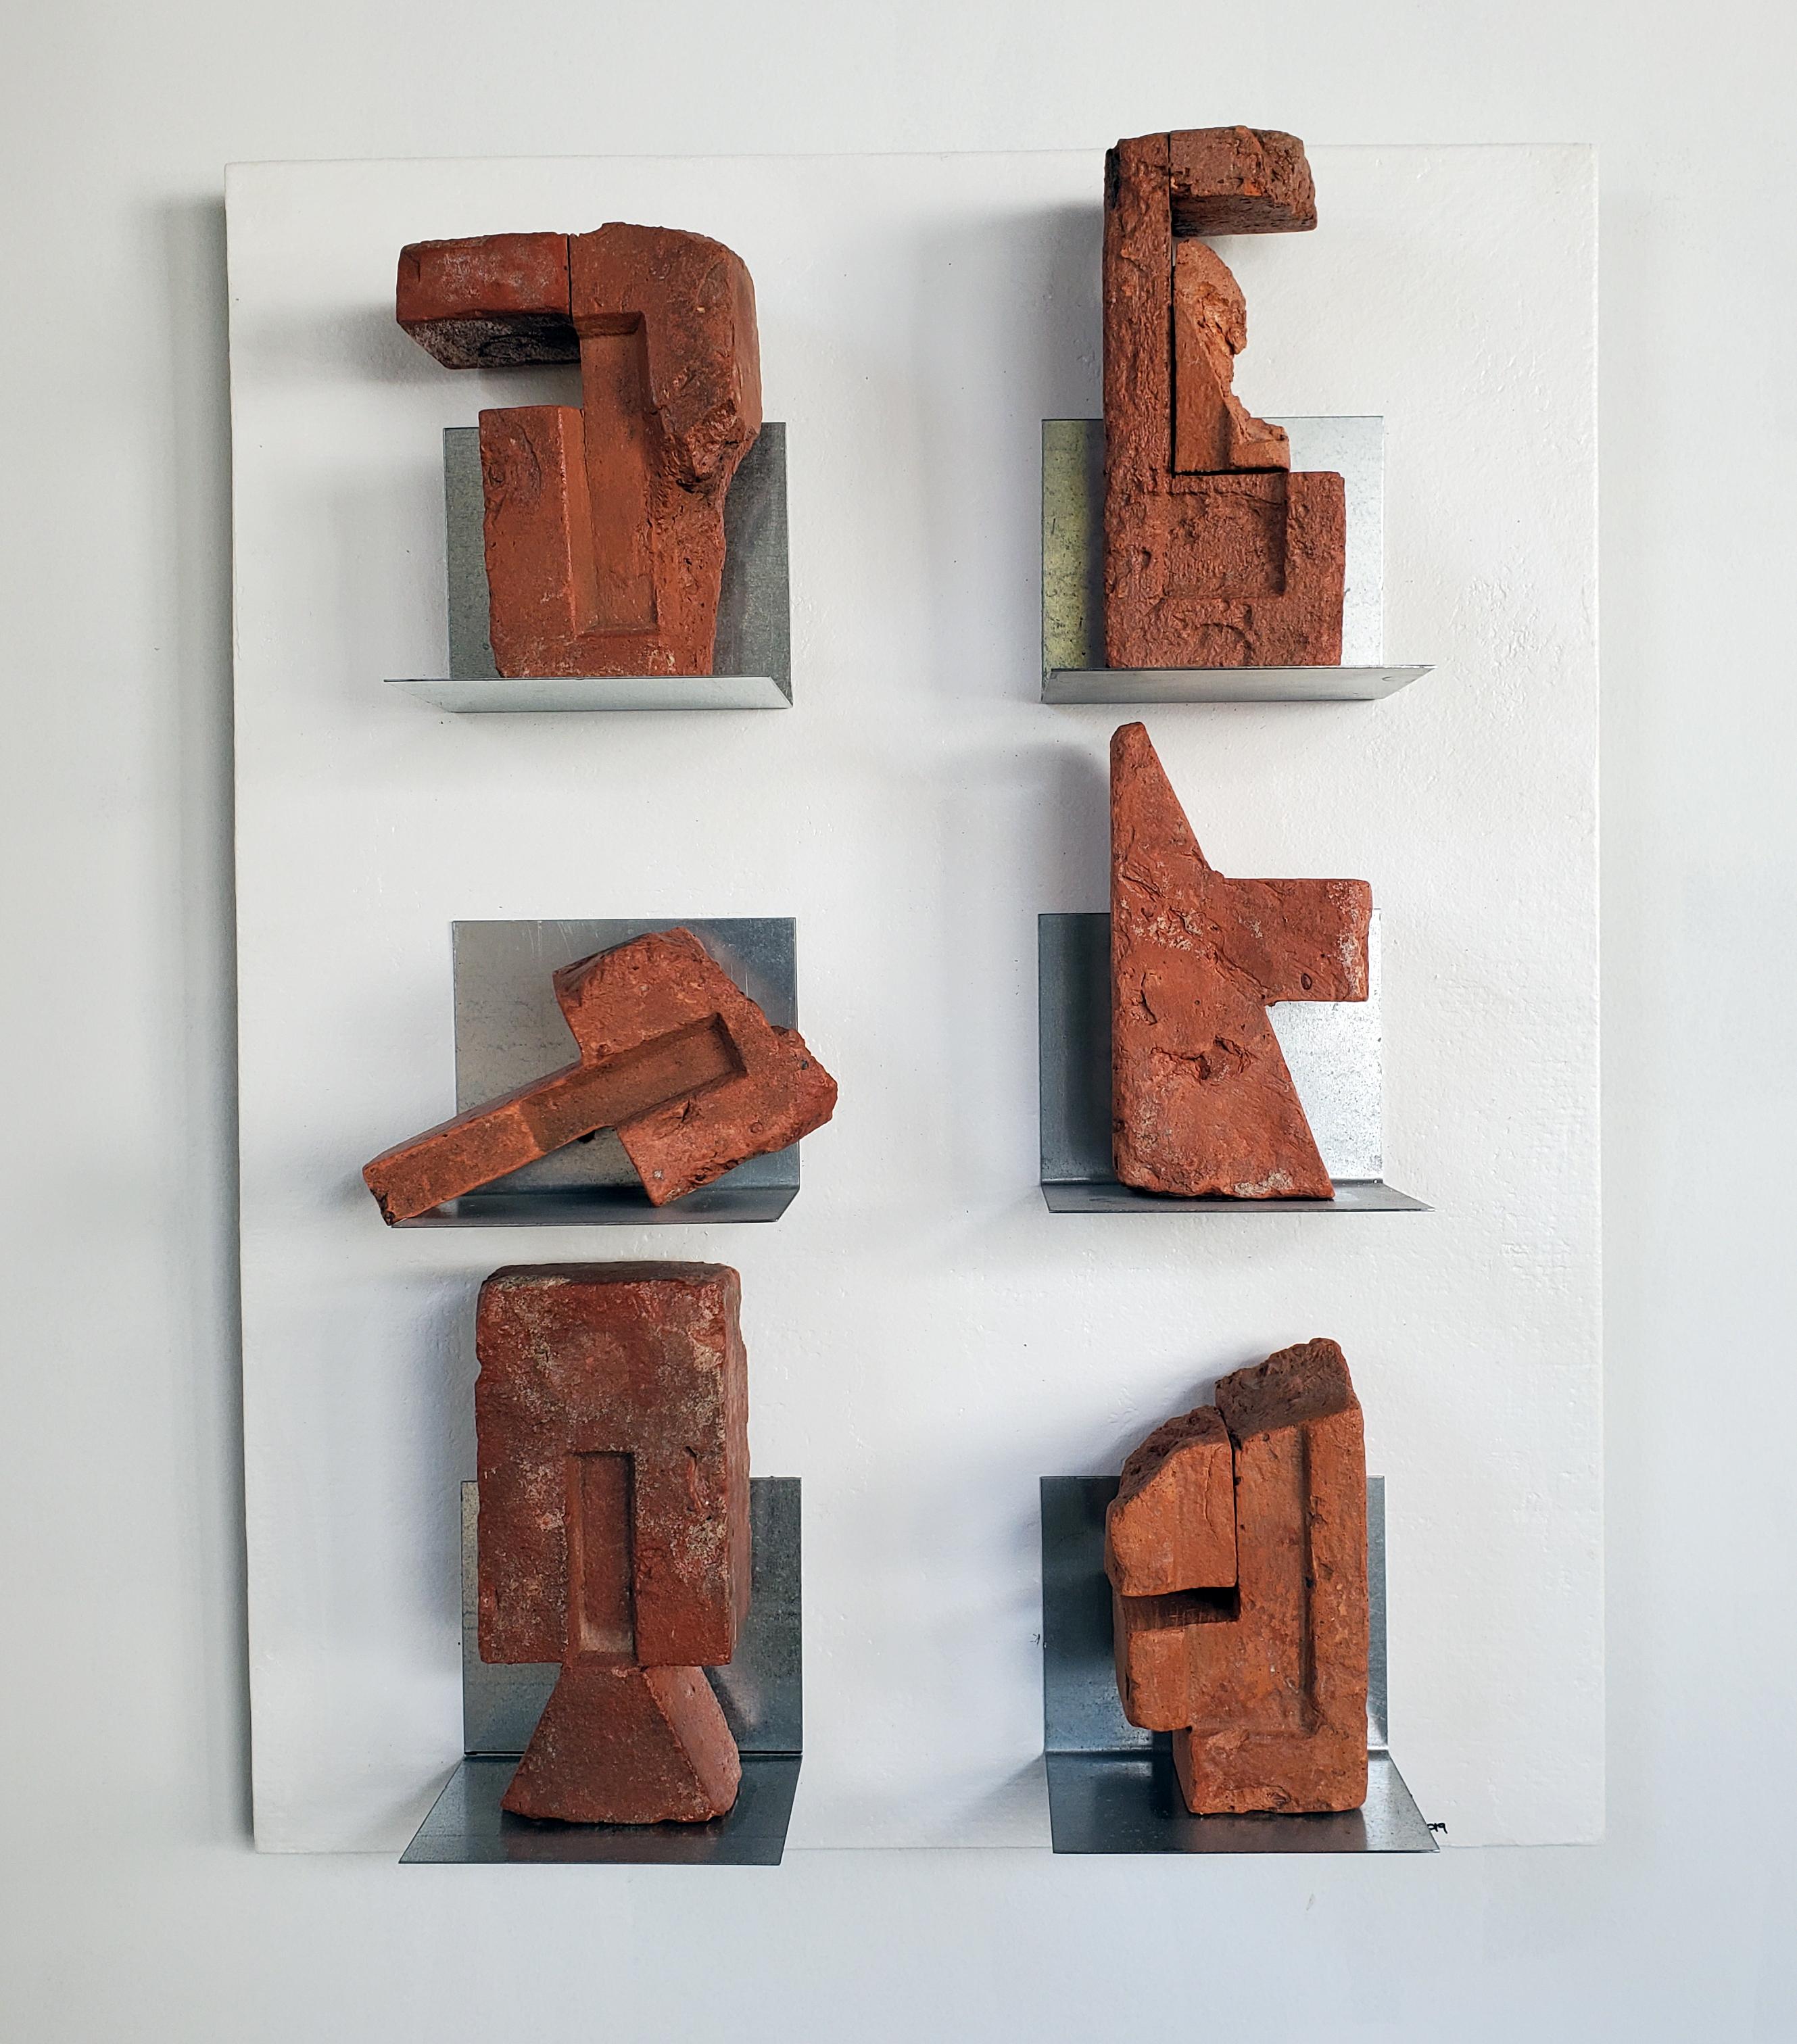 Mark Beltchenko Studio Abstract Sculpture – Eine fesselnde Wandreliefskulptur schafft ein künstlerisches Puzzle, "Gallery of Misfits"